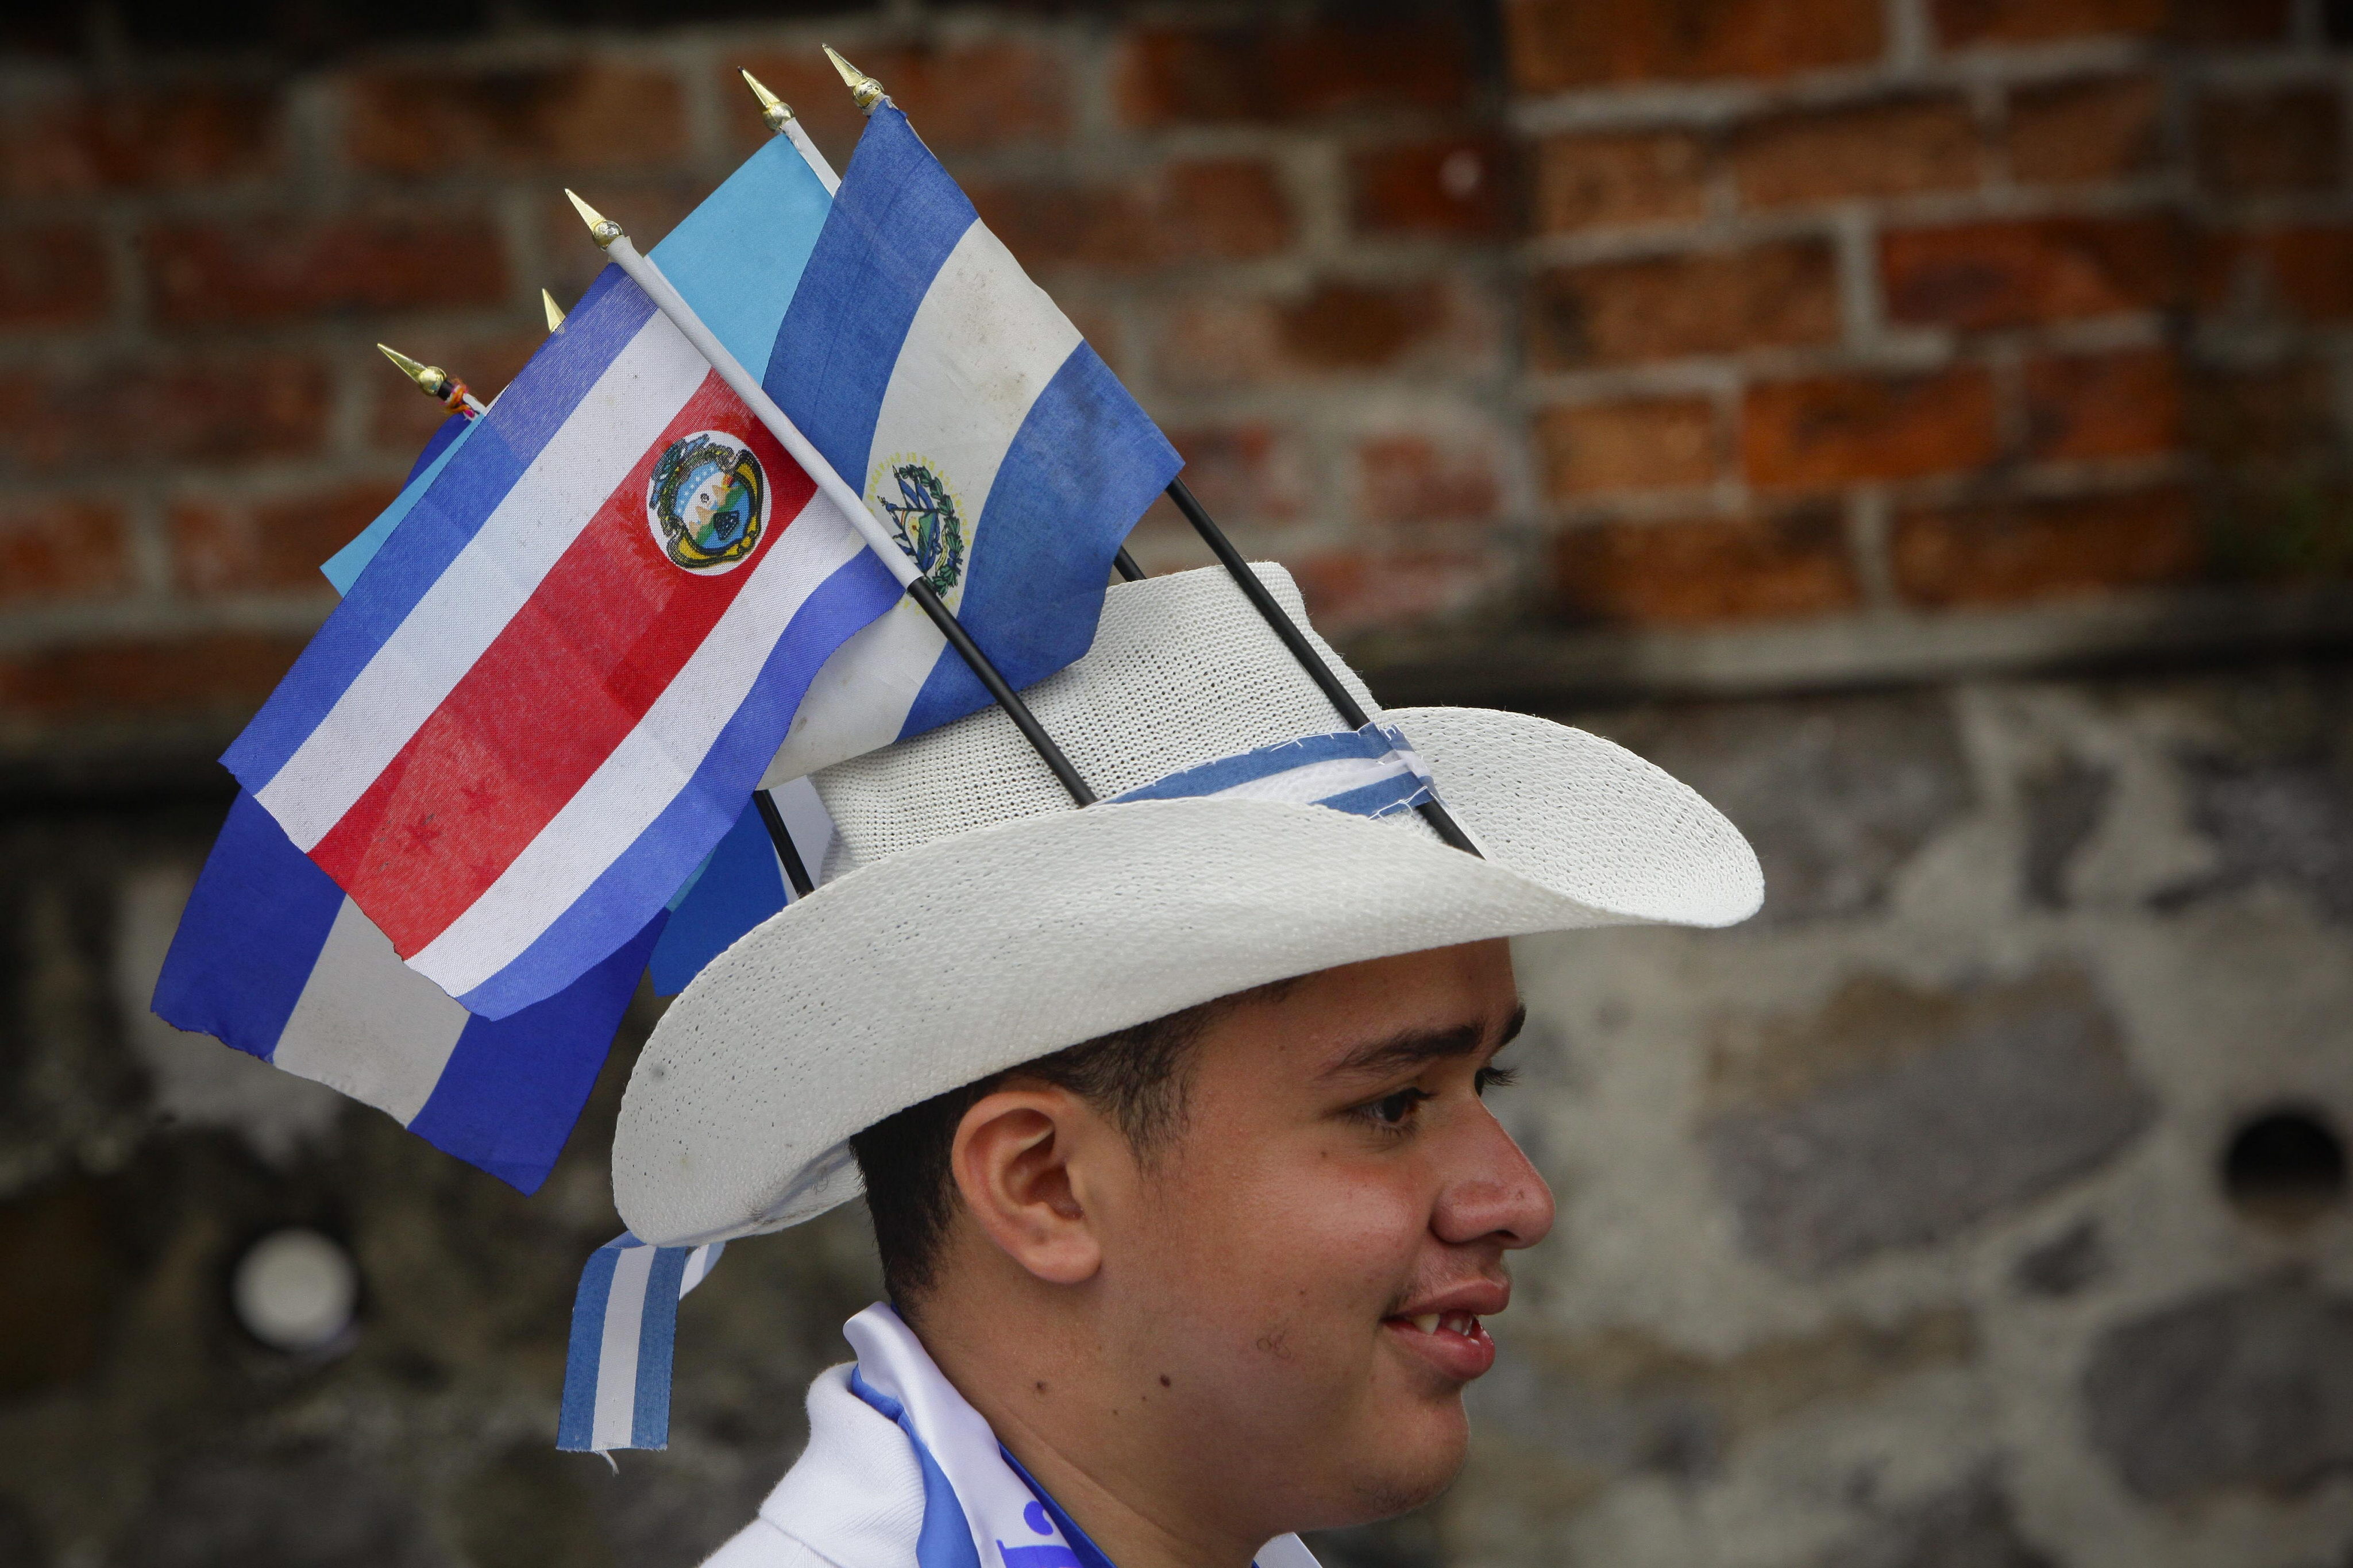 En El Salvador, los niños ondearon banderas alusivas a su grito independentista. (Foto: EFE)